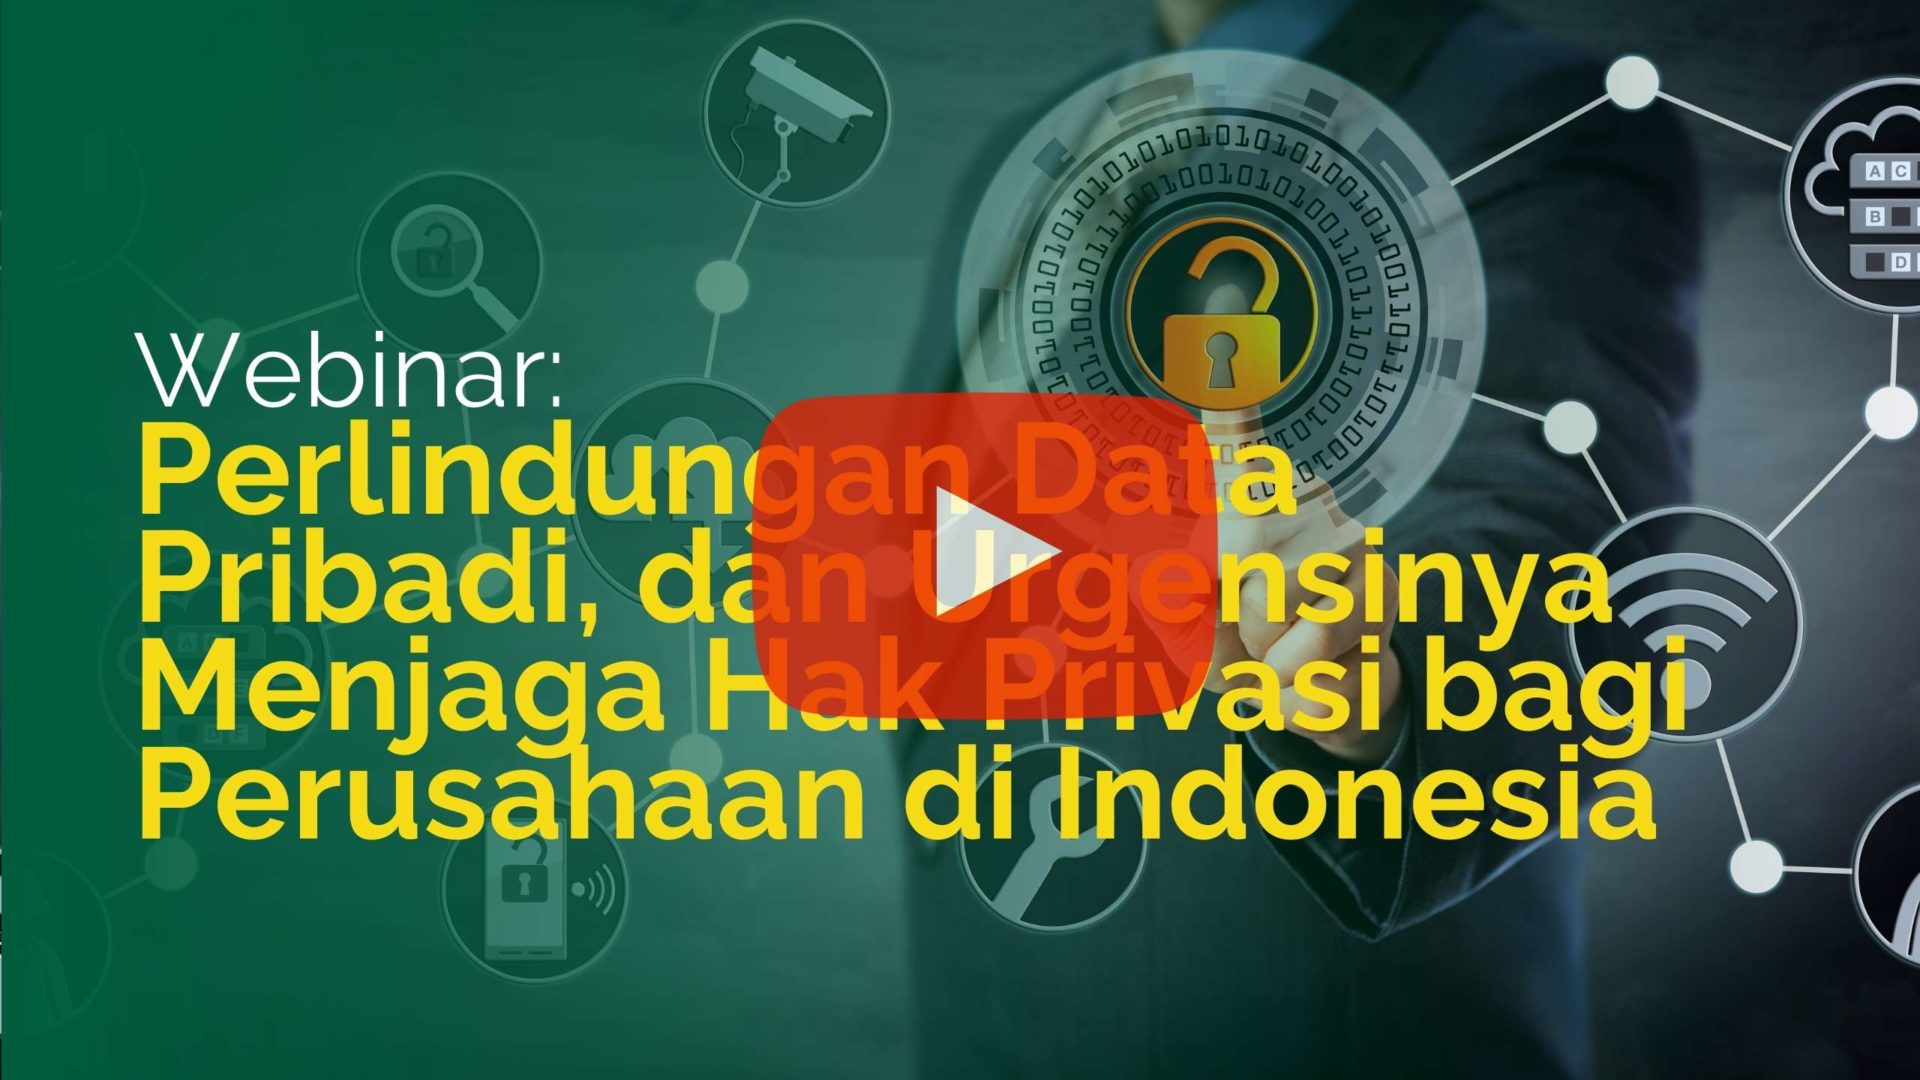 Webinar: Perlindungan Data Pribadi, dan Urgensinya Menjaga Hak Privasi bagi Perusahaan di Indonesia